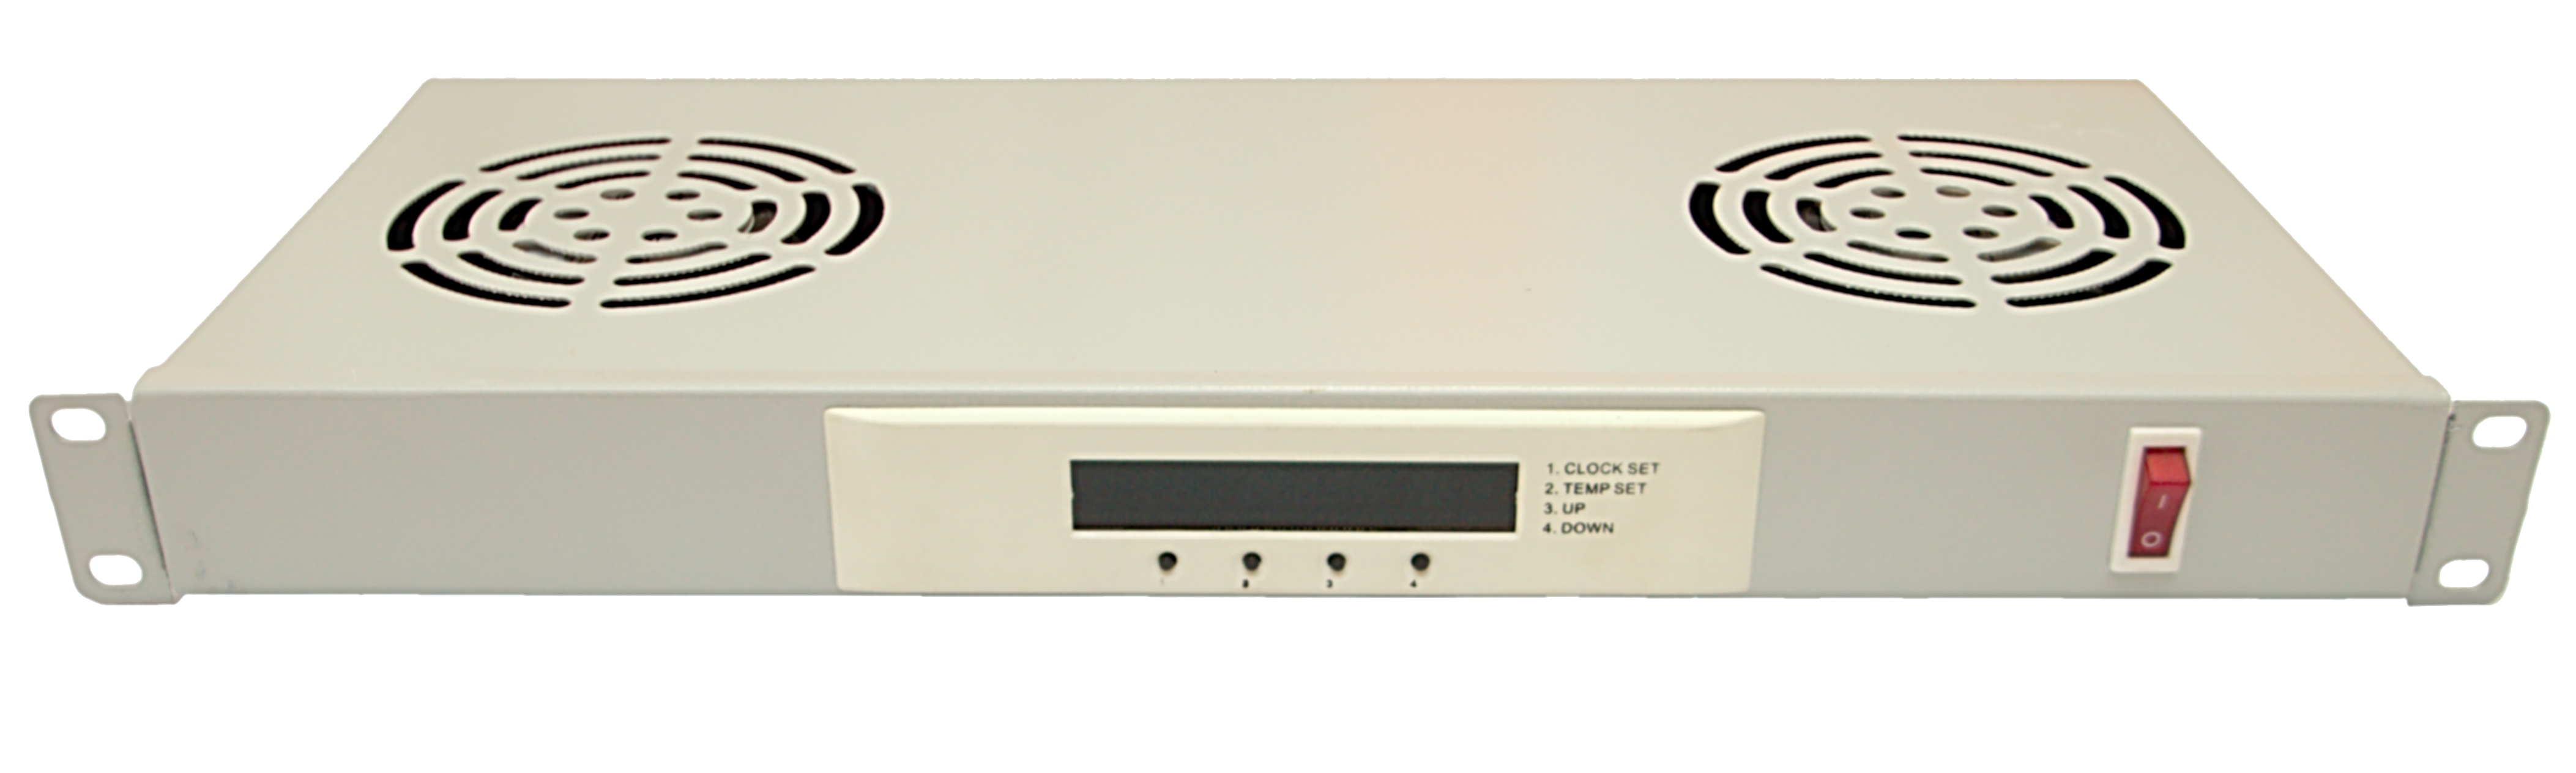 Ventilační jednotka 2x ventilátor 1U s LCD digi termostatem